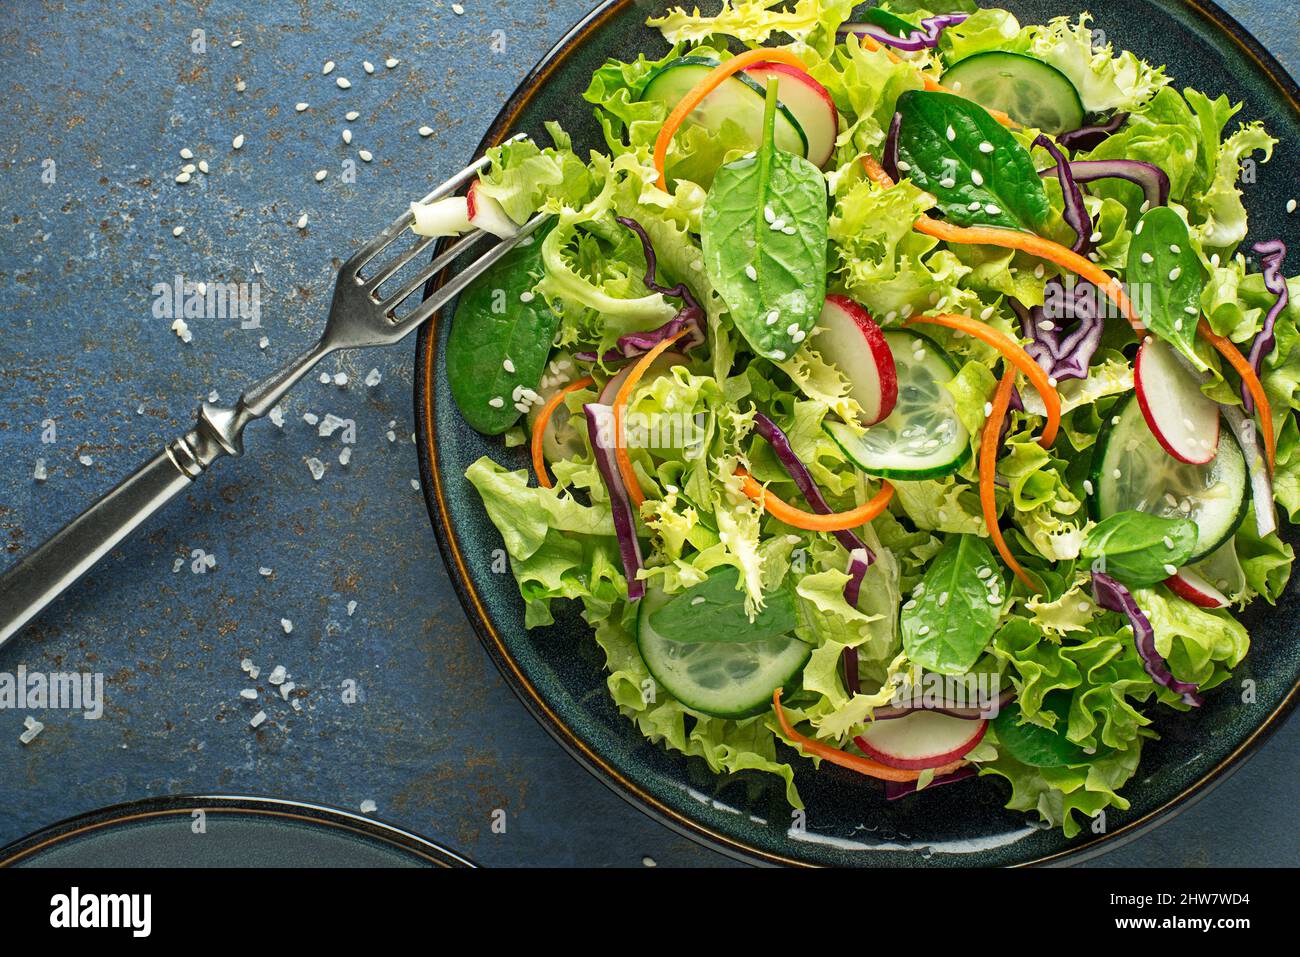 Repas de salade de laitue verte avec légumes frais mélangés sur fond bleu de table Banque D'Images